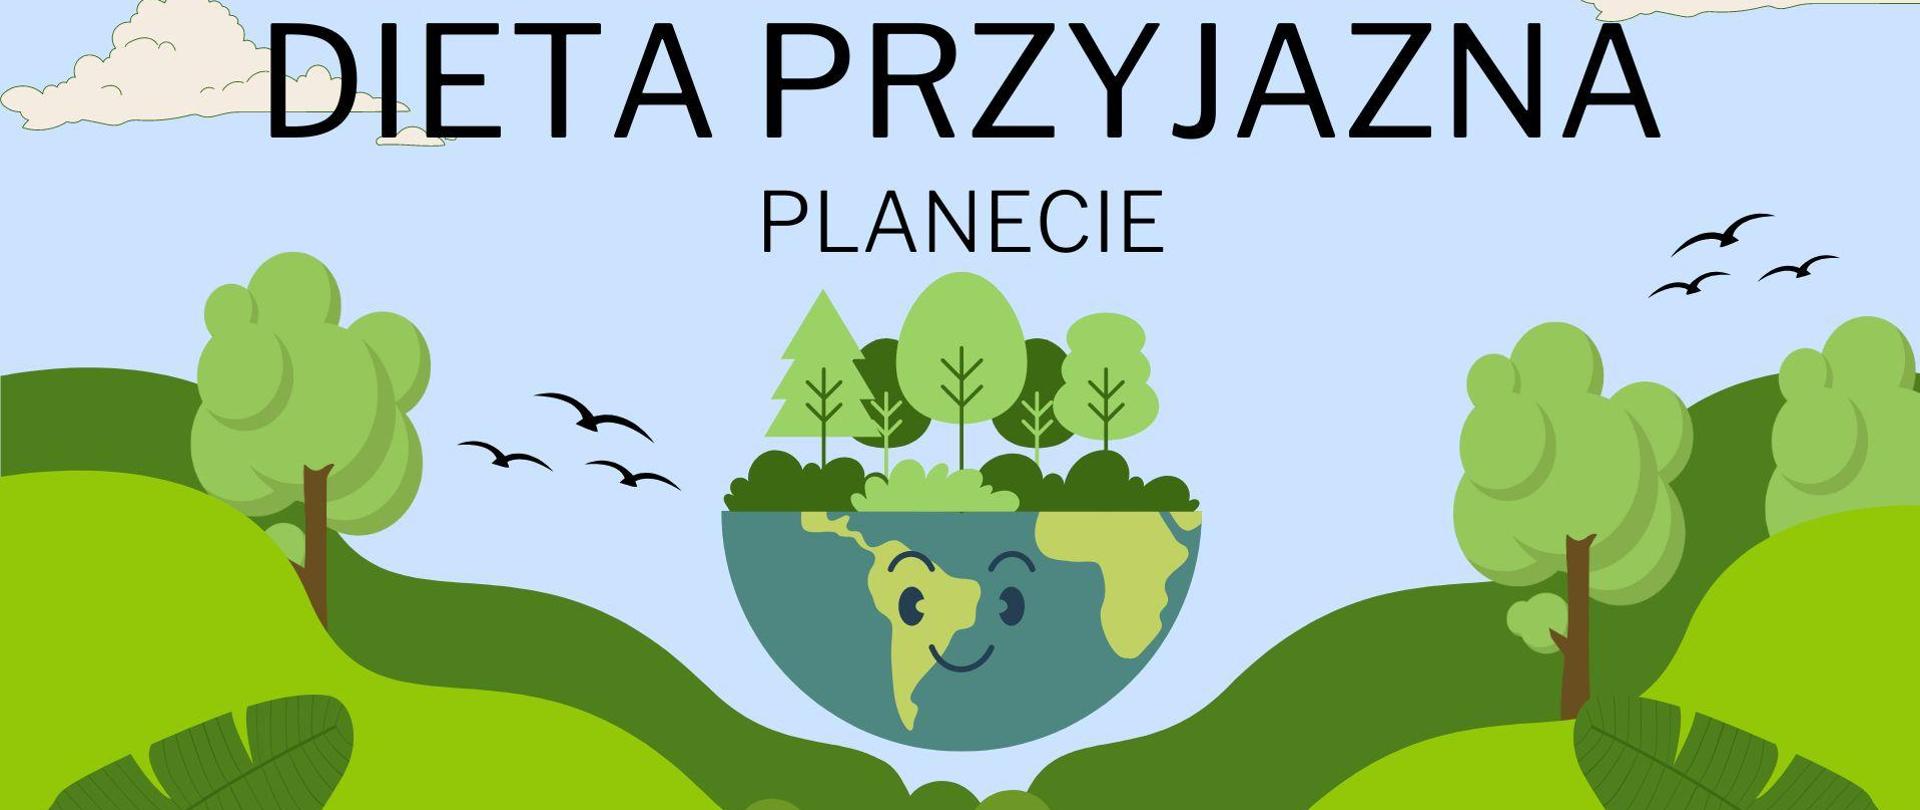 Plakat z napisem dieta przyjazna planecie, zielone rośliny a na środku przecięty na pół globus z uśmiechem